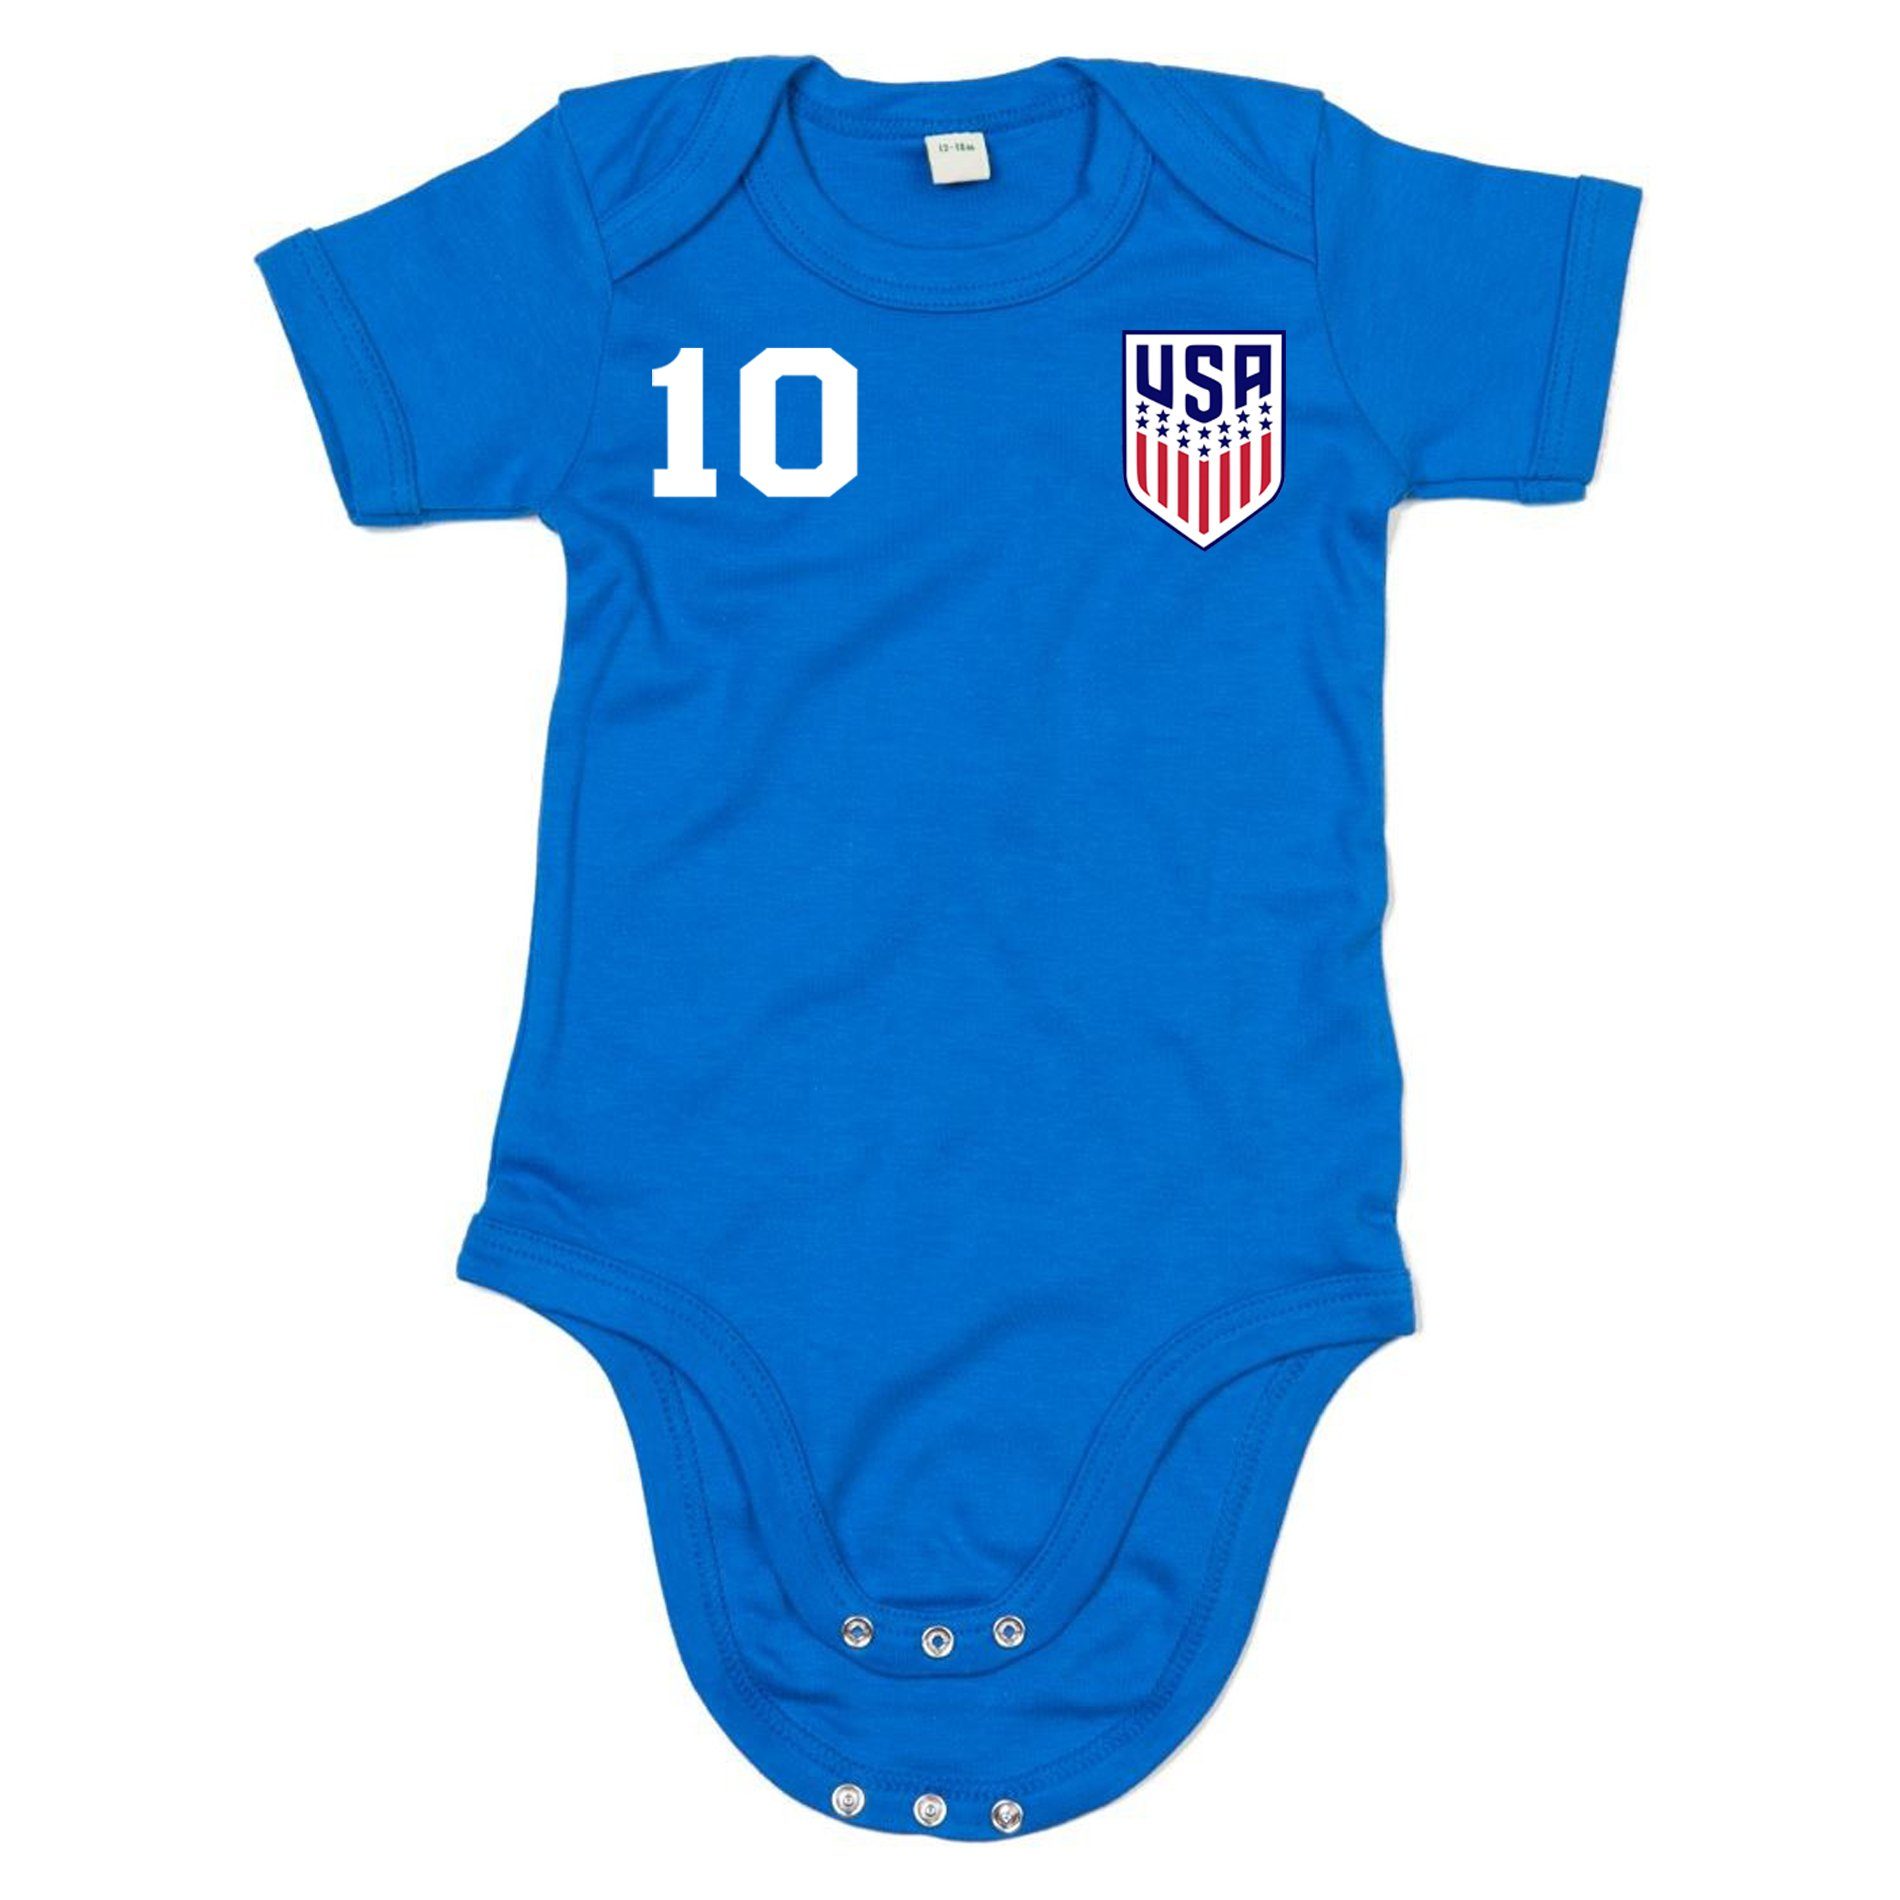 Blondie & Sport Copa USA WM Brownie Kinder Staaten Baby Vereinigte Strampler Trikot Fußball